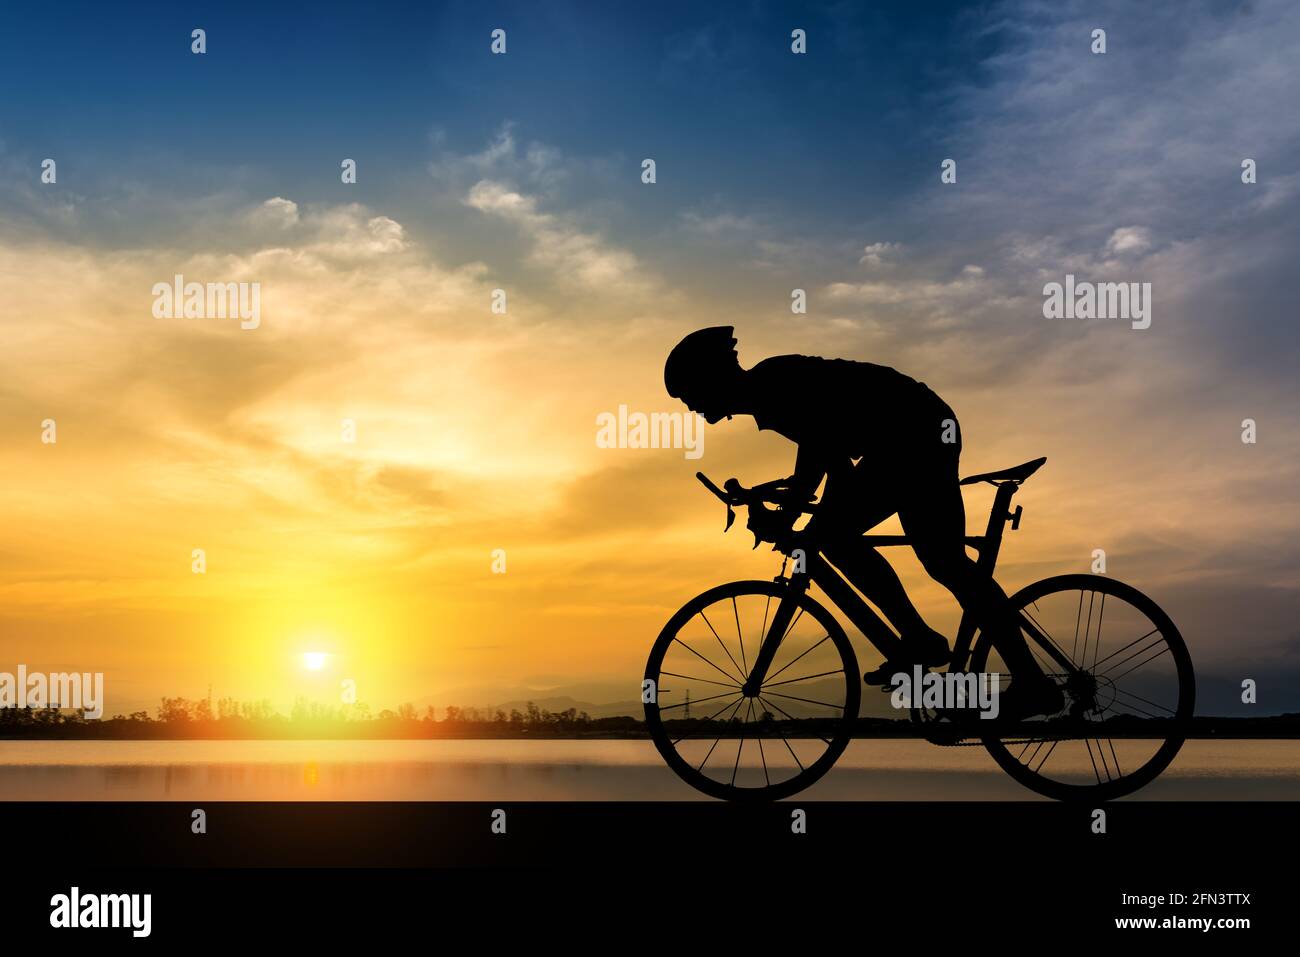 Silhouette der Radfahrer auf dem Hintergrund der schönen Sonnenuntergang, Silhouette des Menschen fahren mit dem Fahrrad in den Sonnenuntergang im Hintergrund. Stockfoto